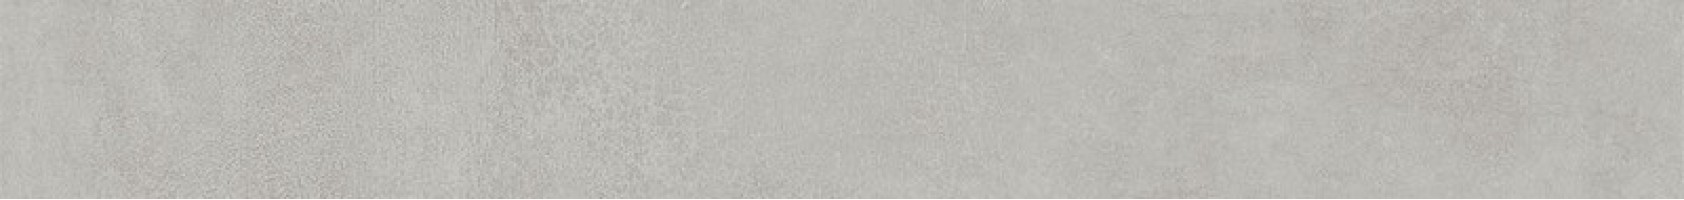 Плинтус Kerama Marazzi Про Догана серый светлый матовый обрезной 9.5x80 DD841190R/8BT